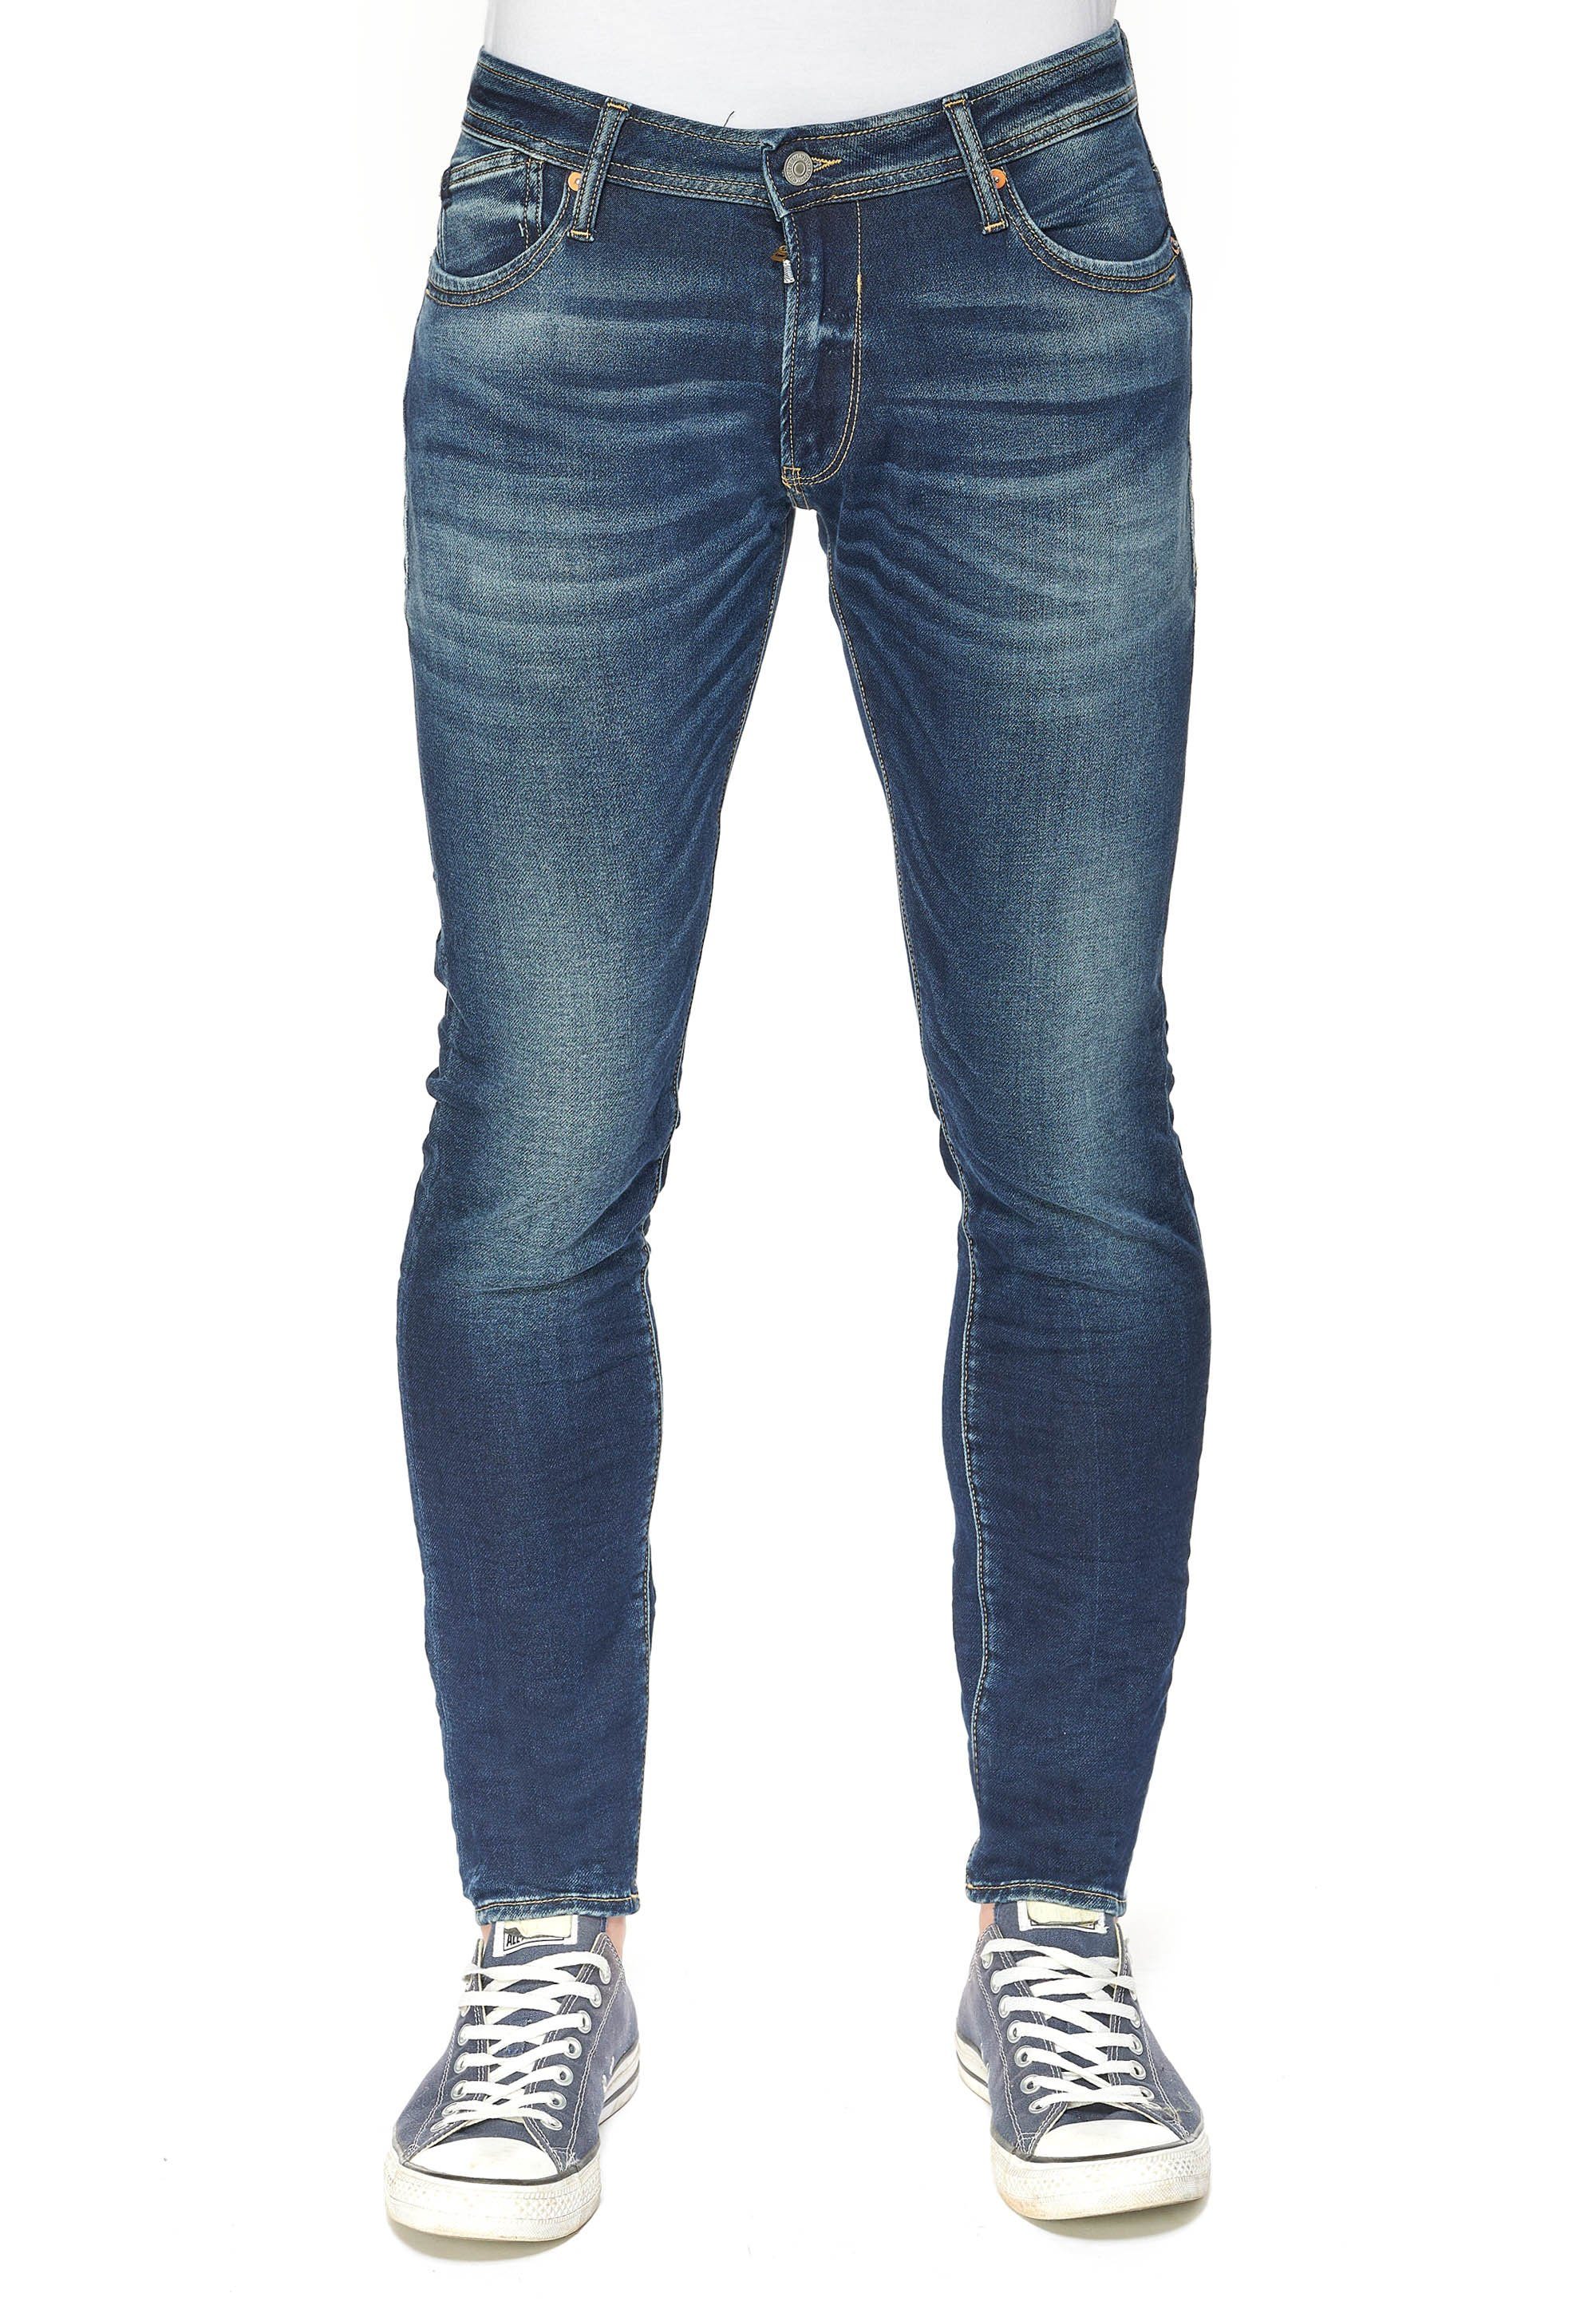 Jeans im Le Trendige Le Herren 5-Pocket-Stil, Röhrenjeans für des Des cerises Temps klassischen temps von Cerises